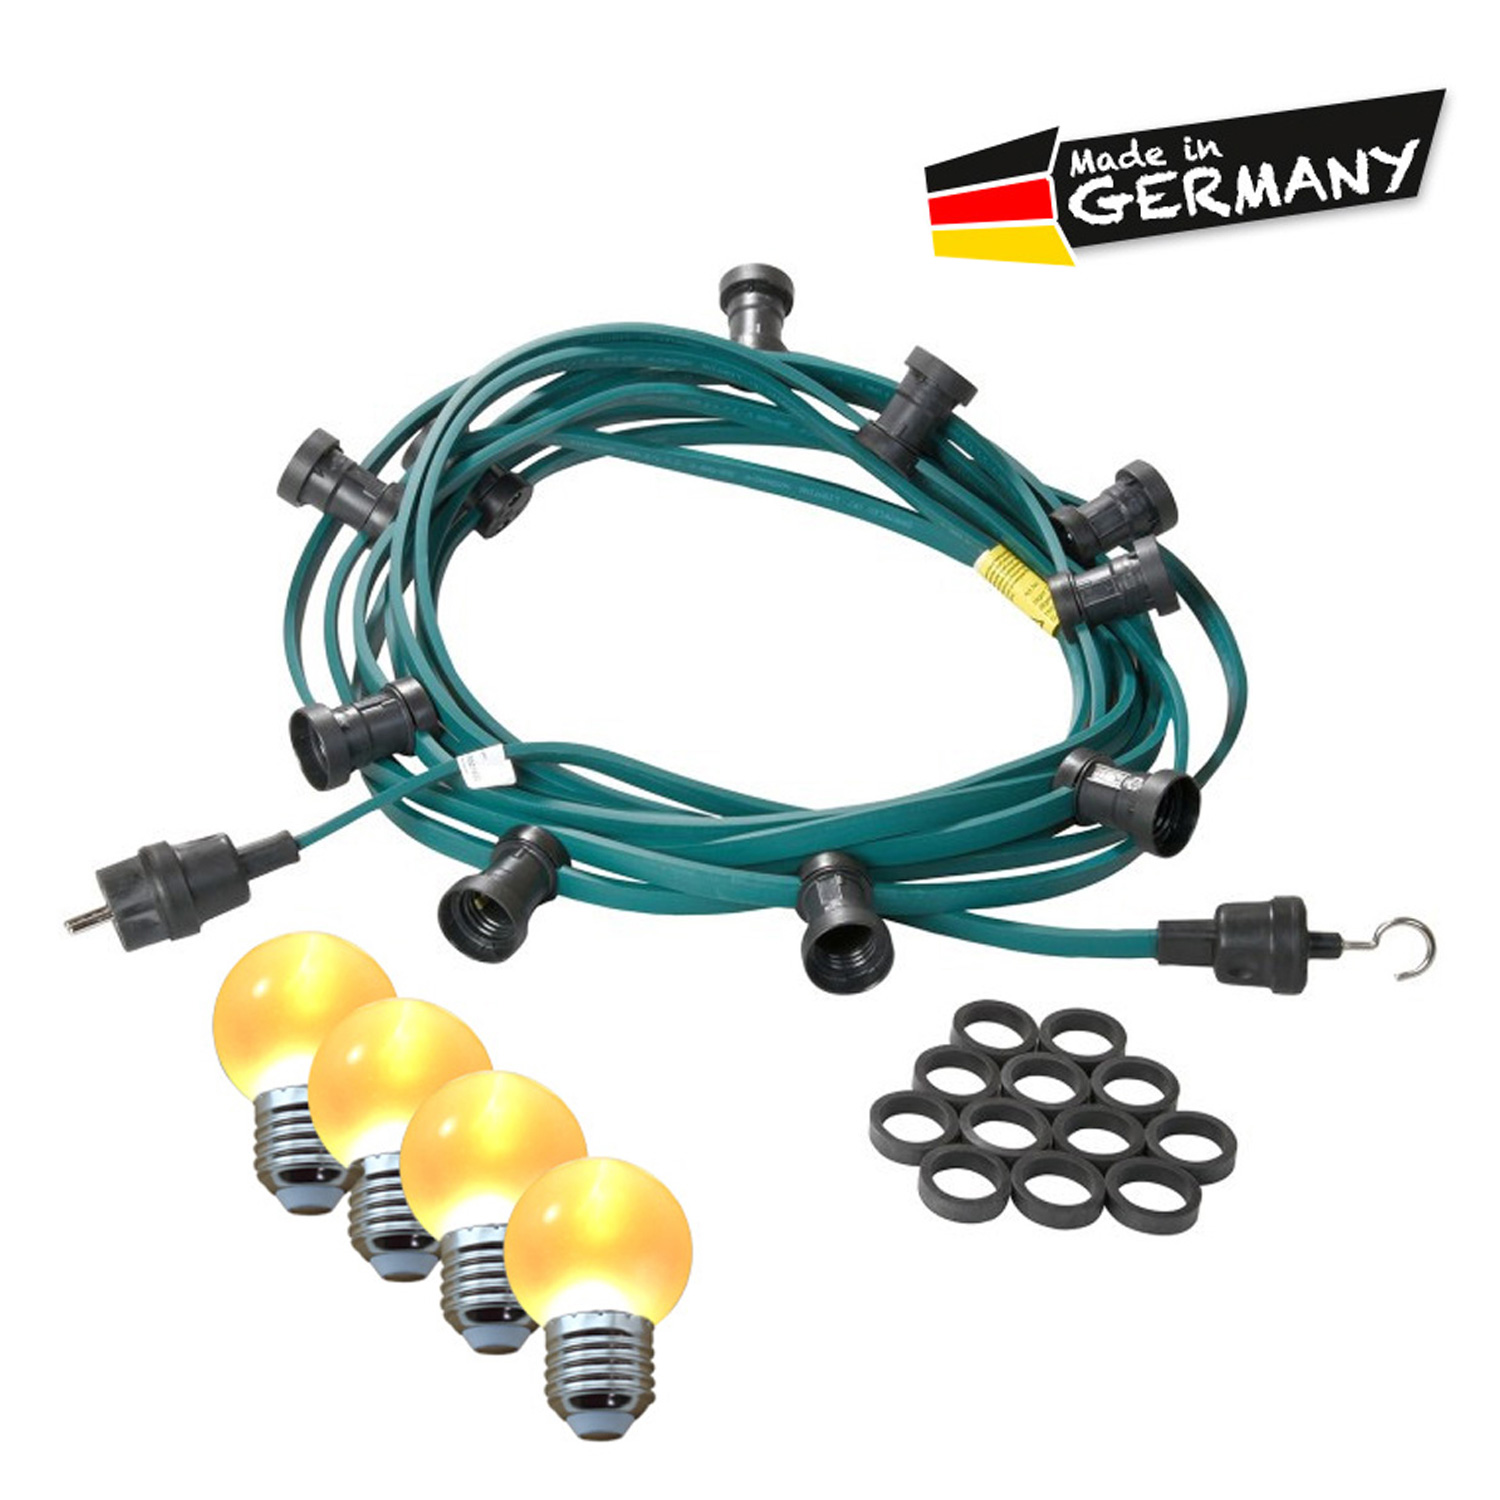 Illu-/Partylichterkette 20m | Außenlichterkette | Made in Germany | 40 x ultra-warmweisse LED Kugeln